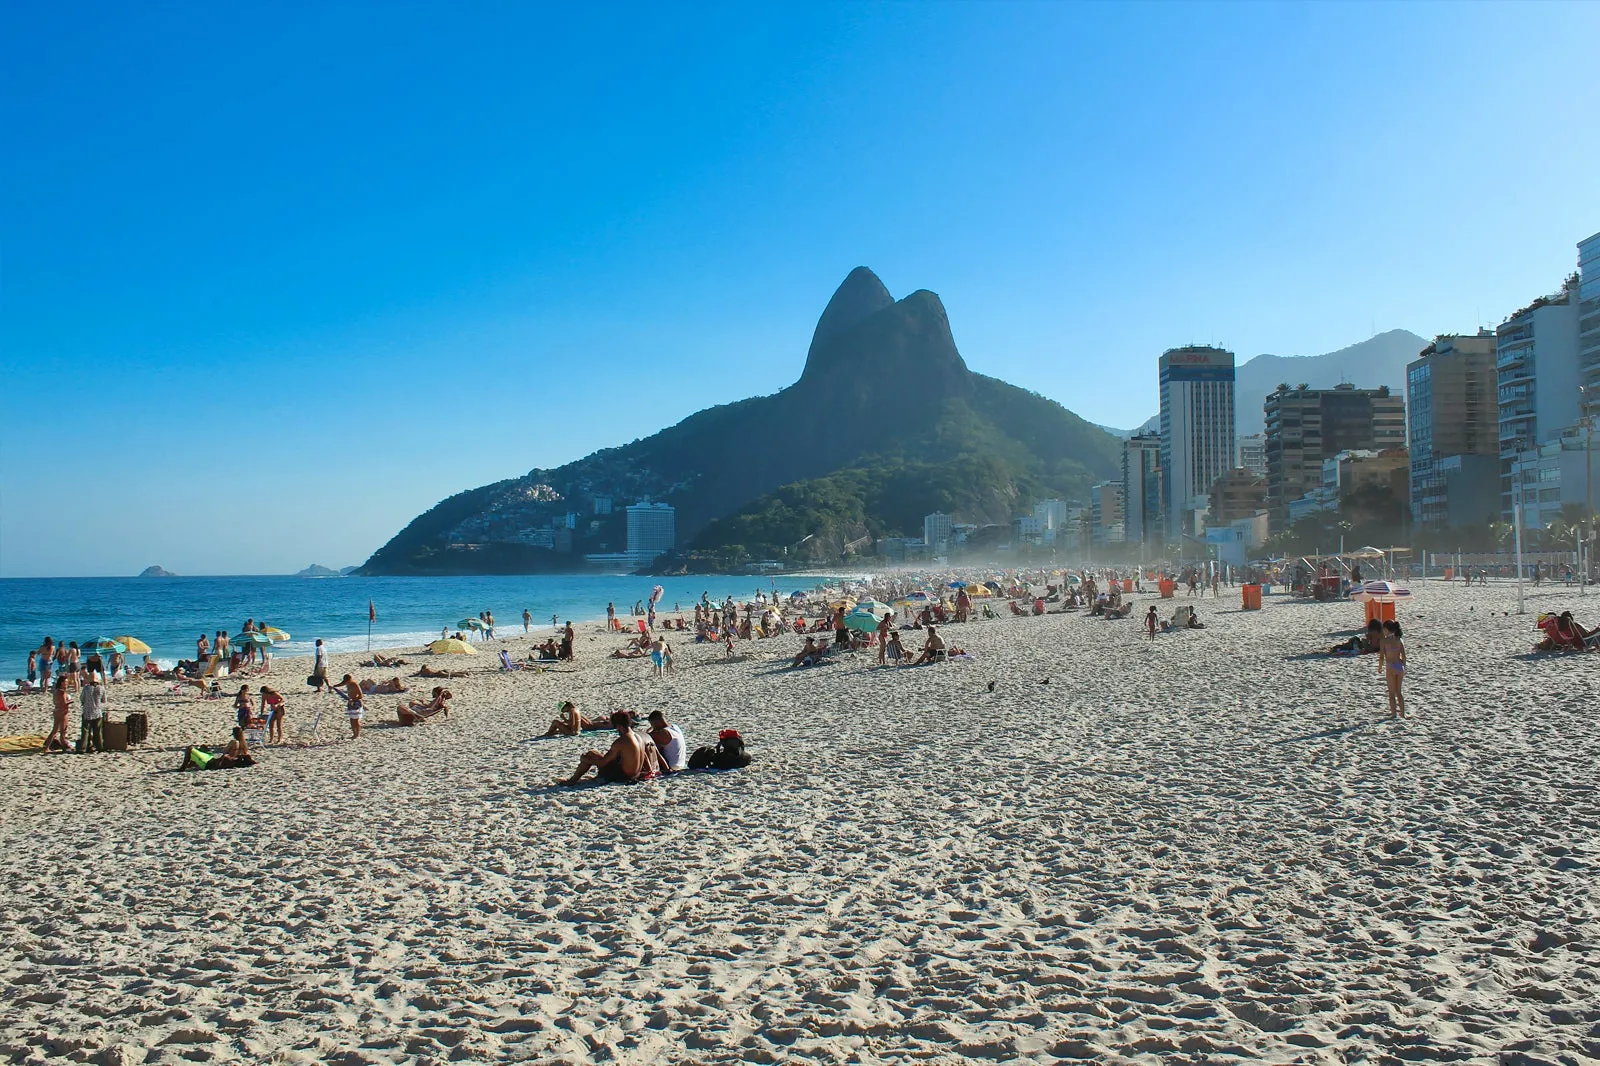 Os Novos Lançamentos de Imóveis no Leblon: Oportunidades de Investimento em uma das Áreas mais Valorizadas do Rio de Janeiro.